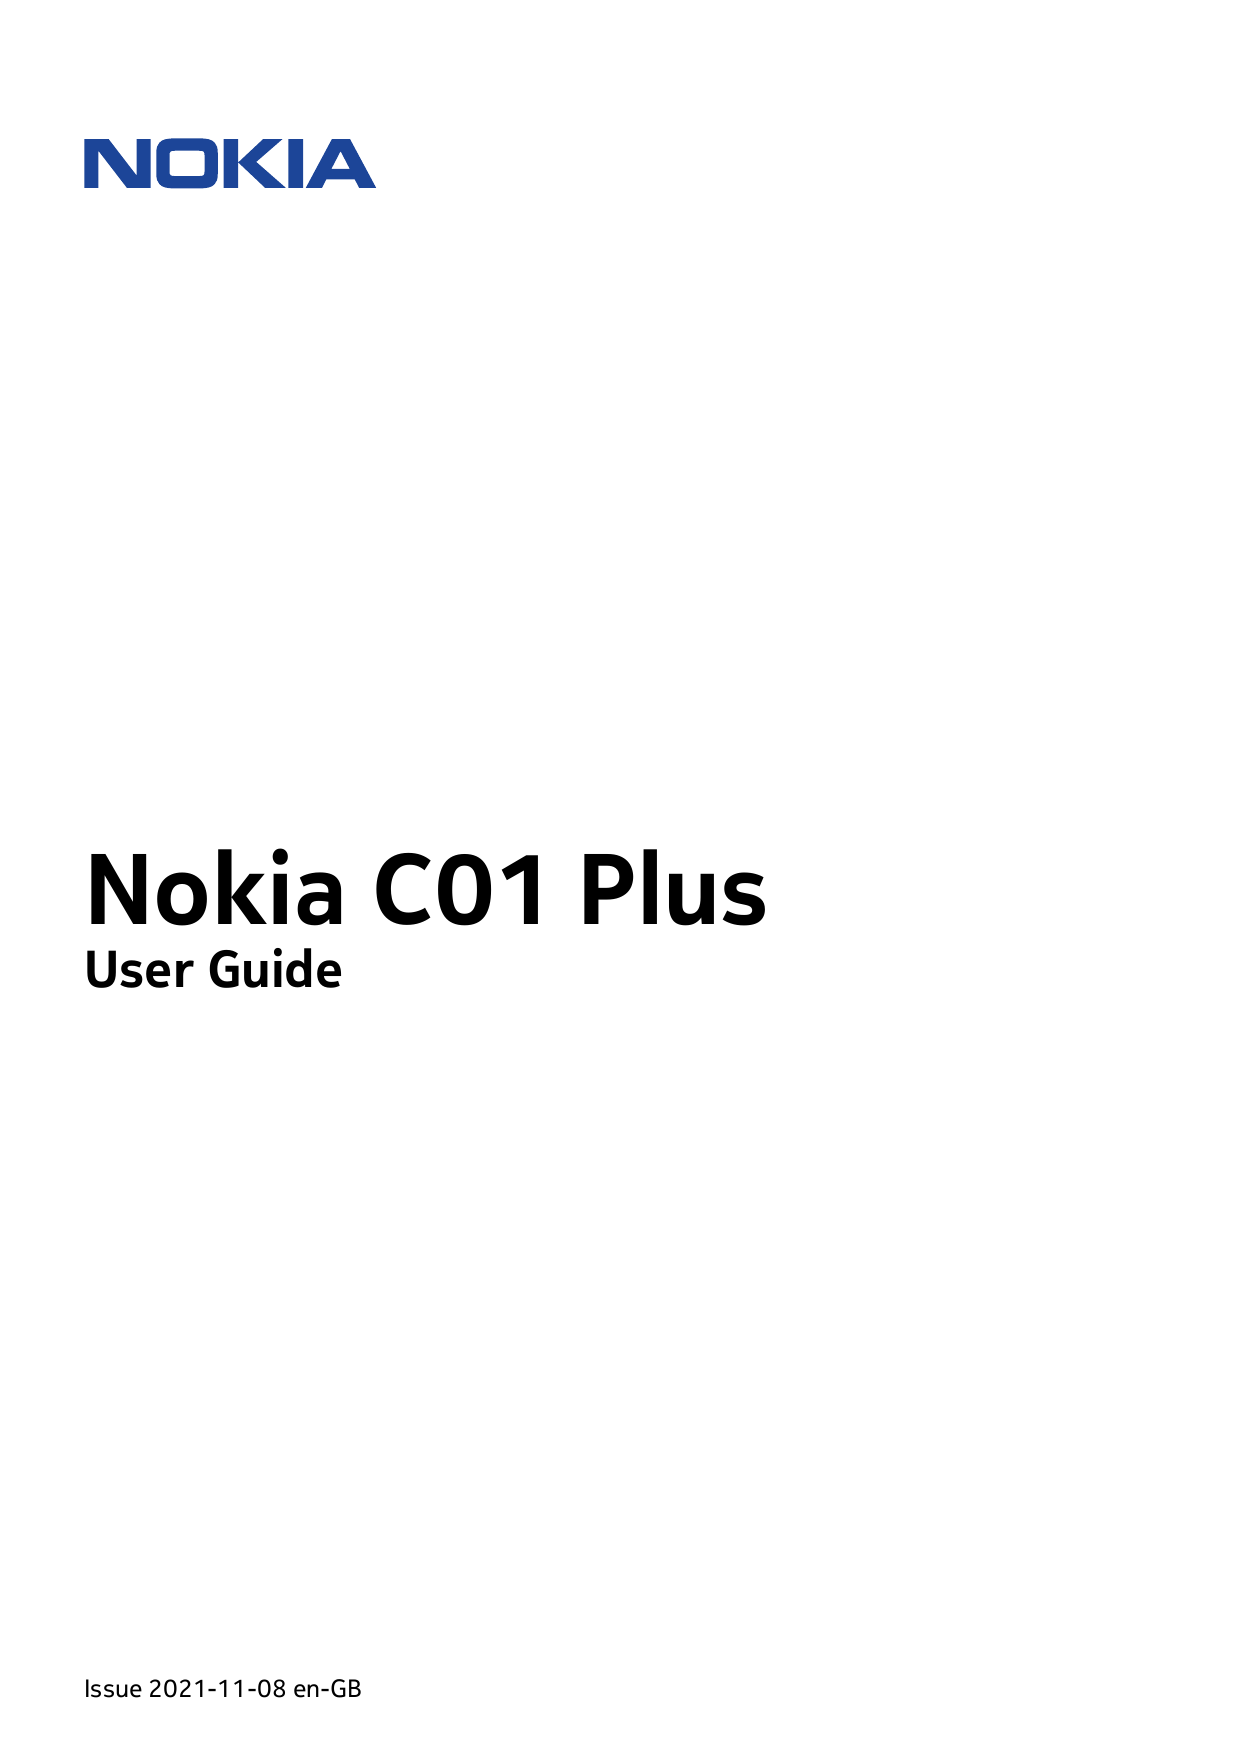 Nokia C01 PlusUser GuideIssue 2021-11-08 en-GB